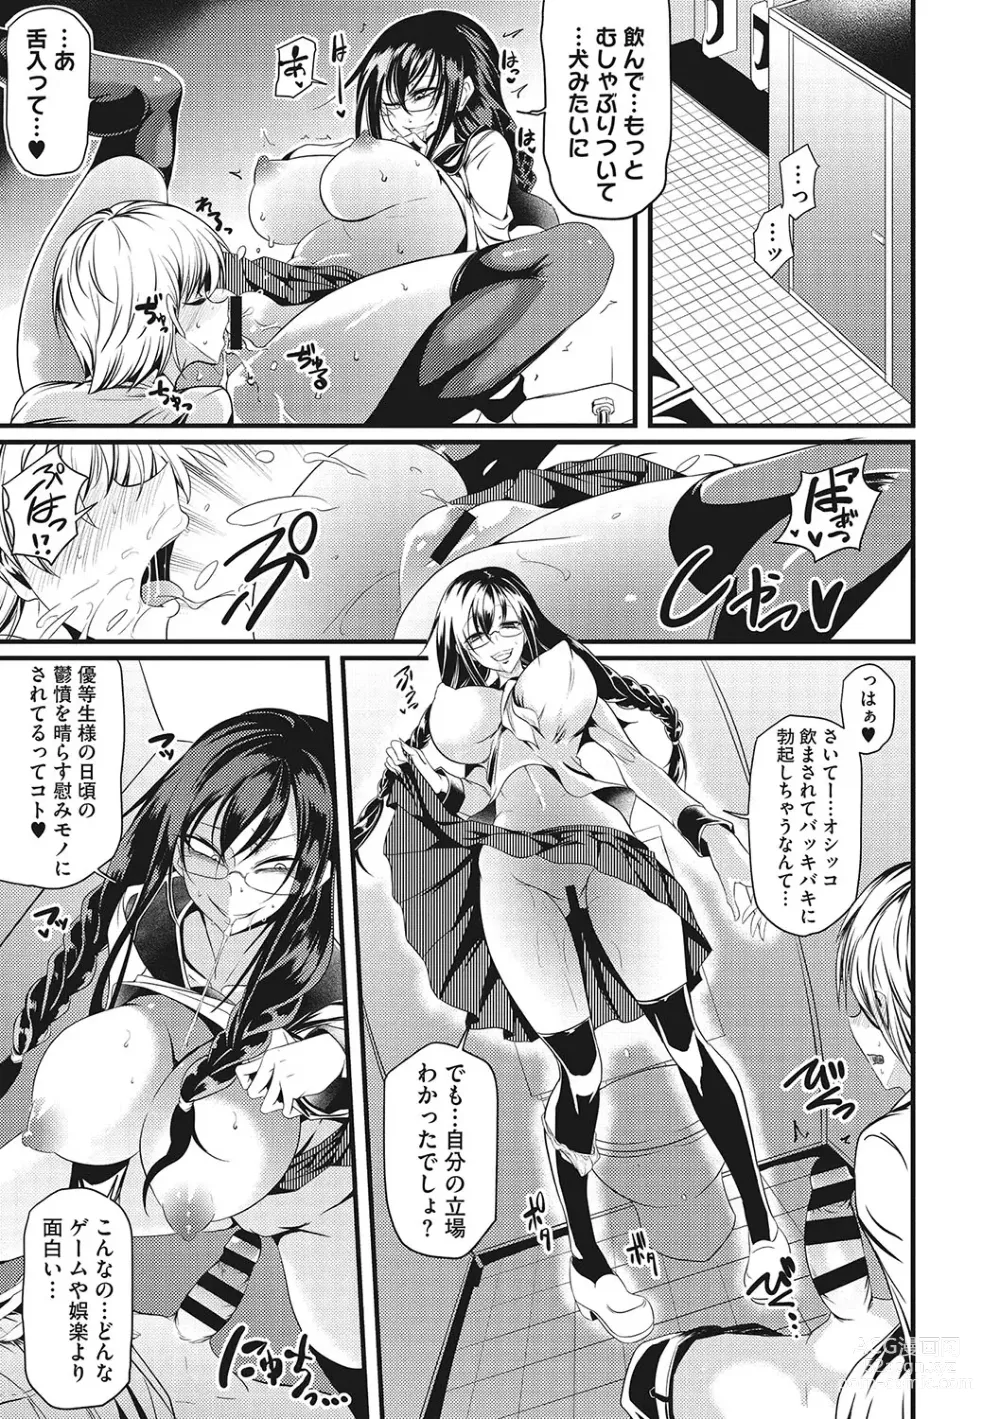 Page 14 of manga Sanpai Shoujo